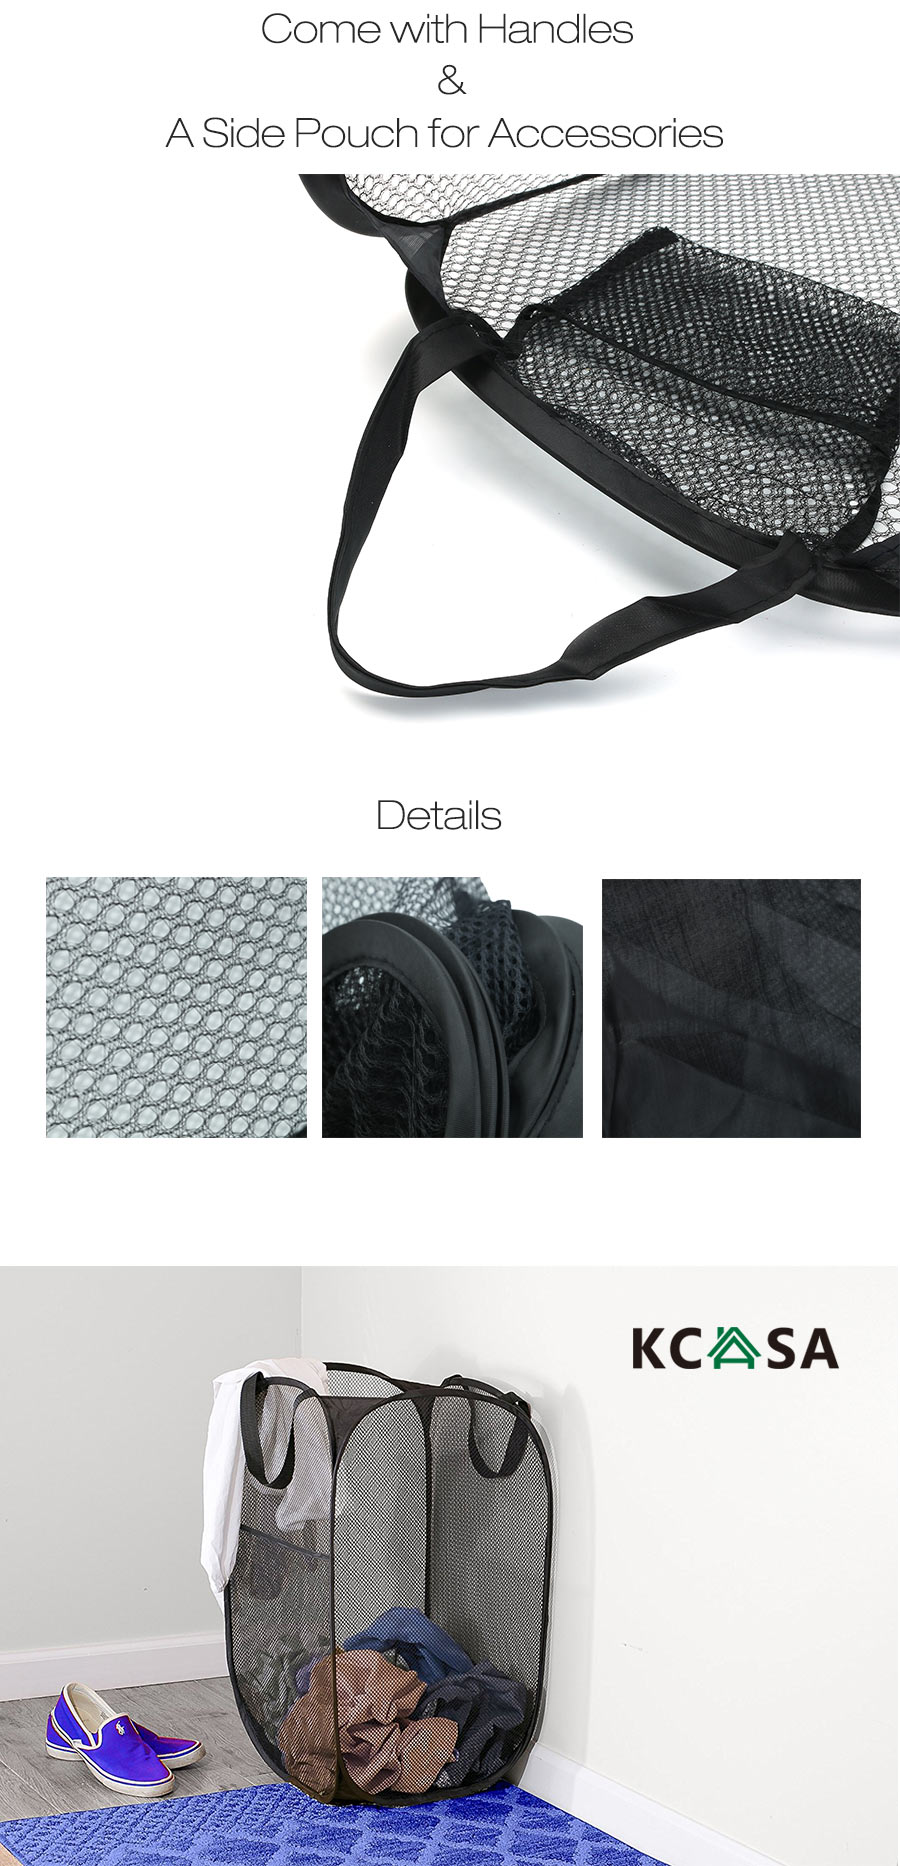 KCASA-KC-0916-Mesh-Pop-Up-Laundry-Hamper-Foldable-Laundry-Basket-Household-Clothing-Organizer-1167553